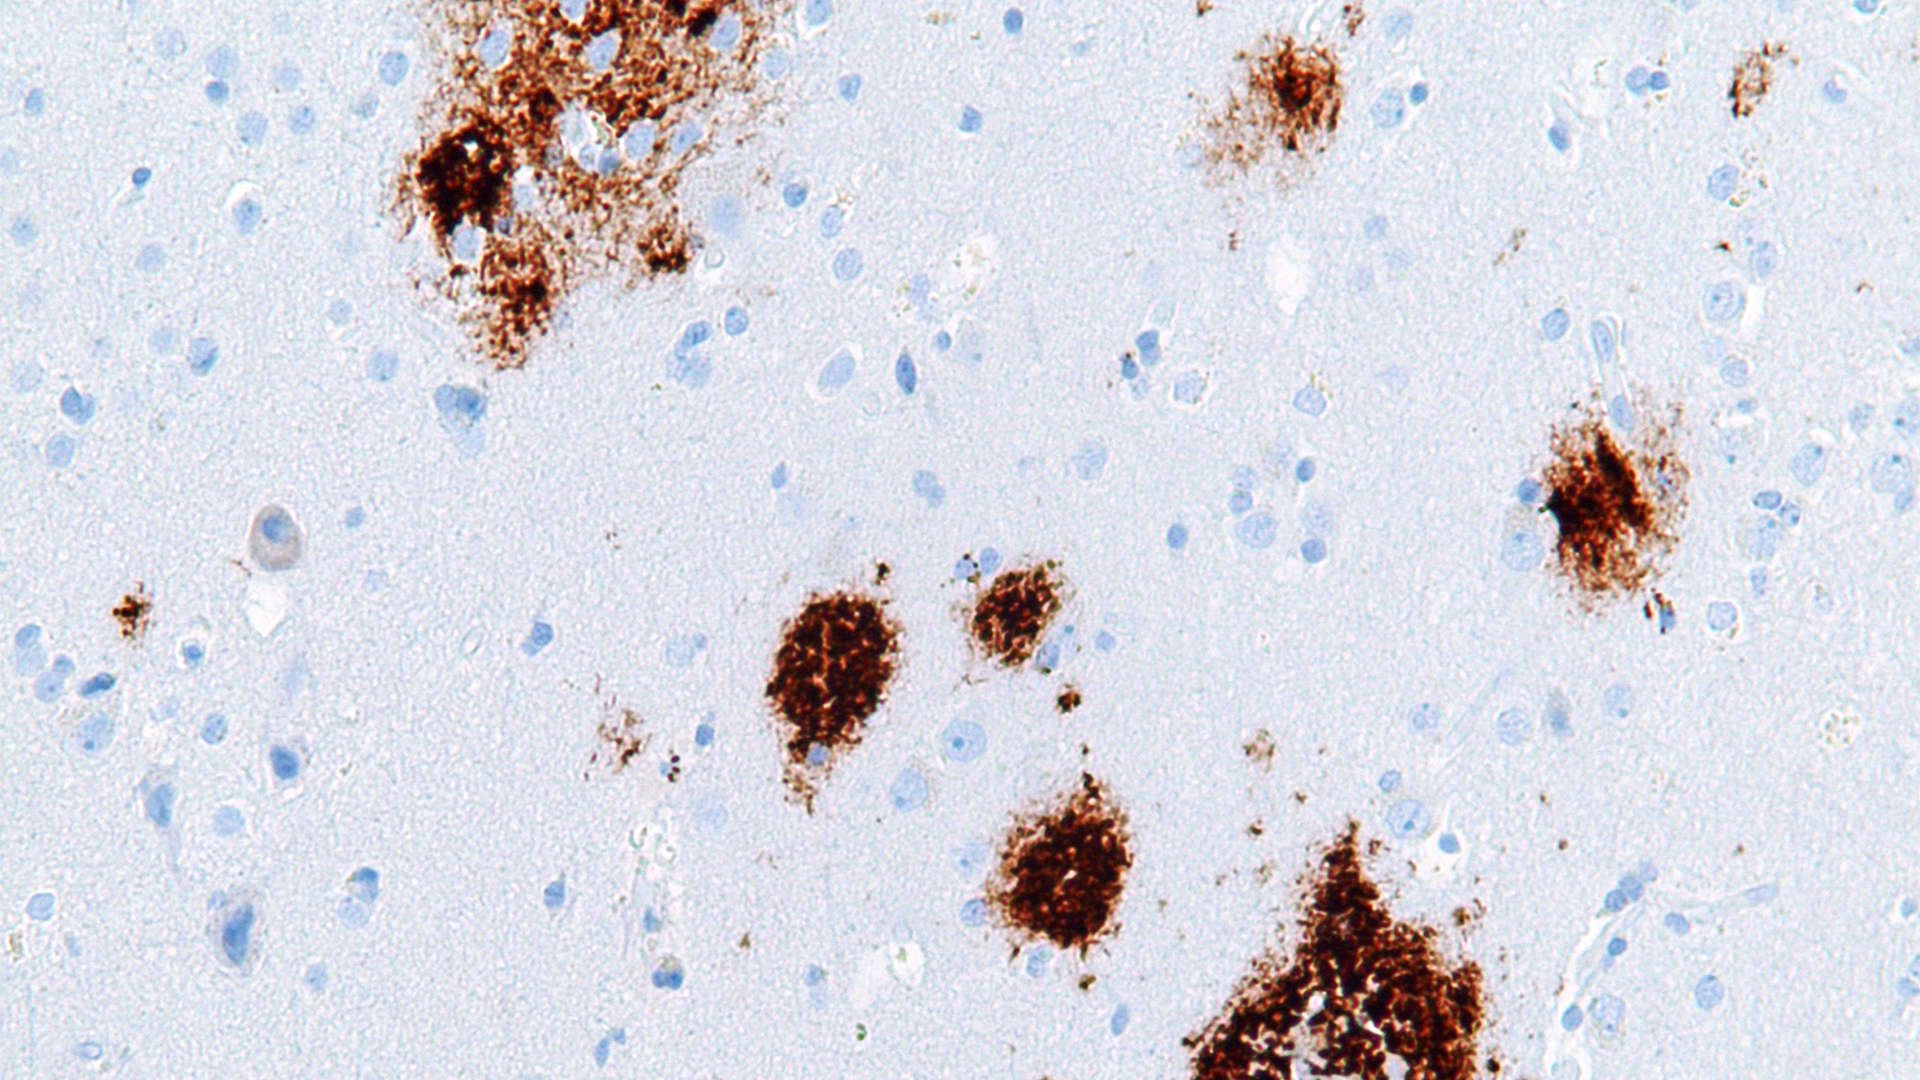 Bilden visar amyloida plack (syns i brunt). Vid Alzheimers sjukdom bildas små klumpar vid nervtrådarna, så kallade amyloida plack, som stör kommunikationen mellan nervcellerna. Placken består främst av beta-amyloid, ett protein som även förekommer i en frisk hjärna.